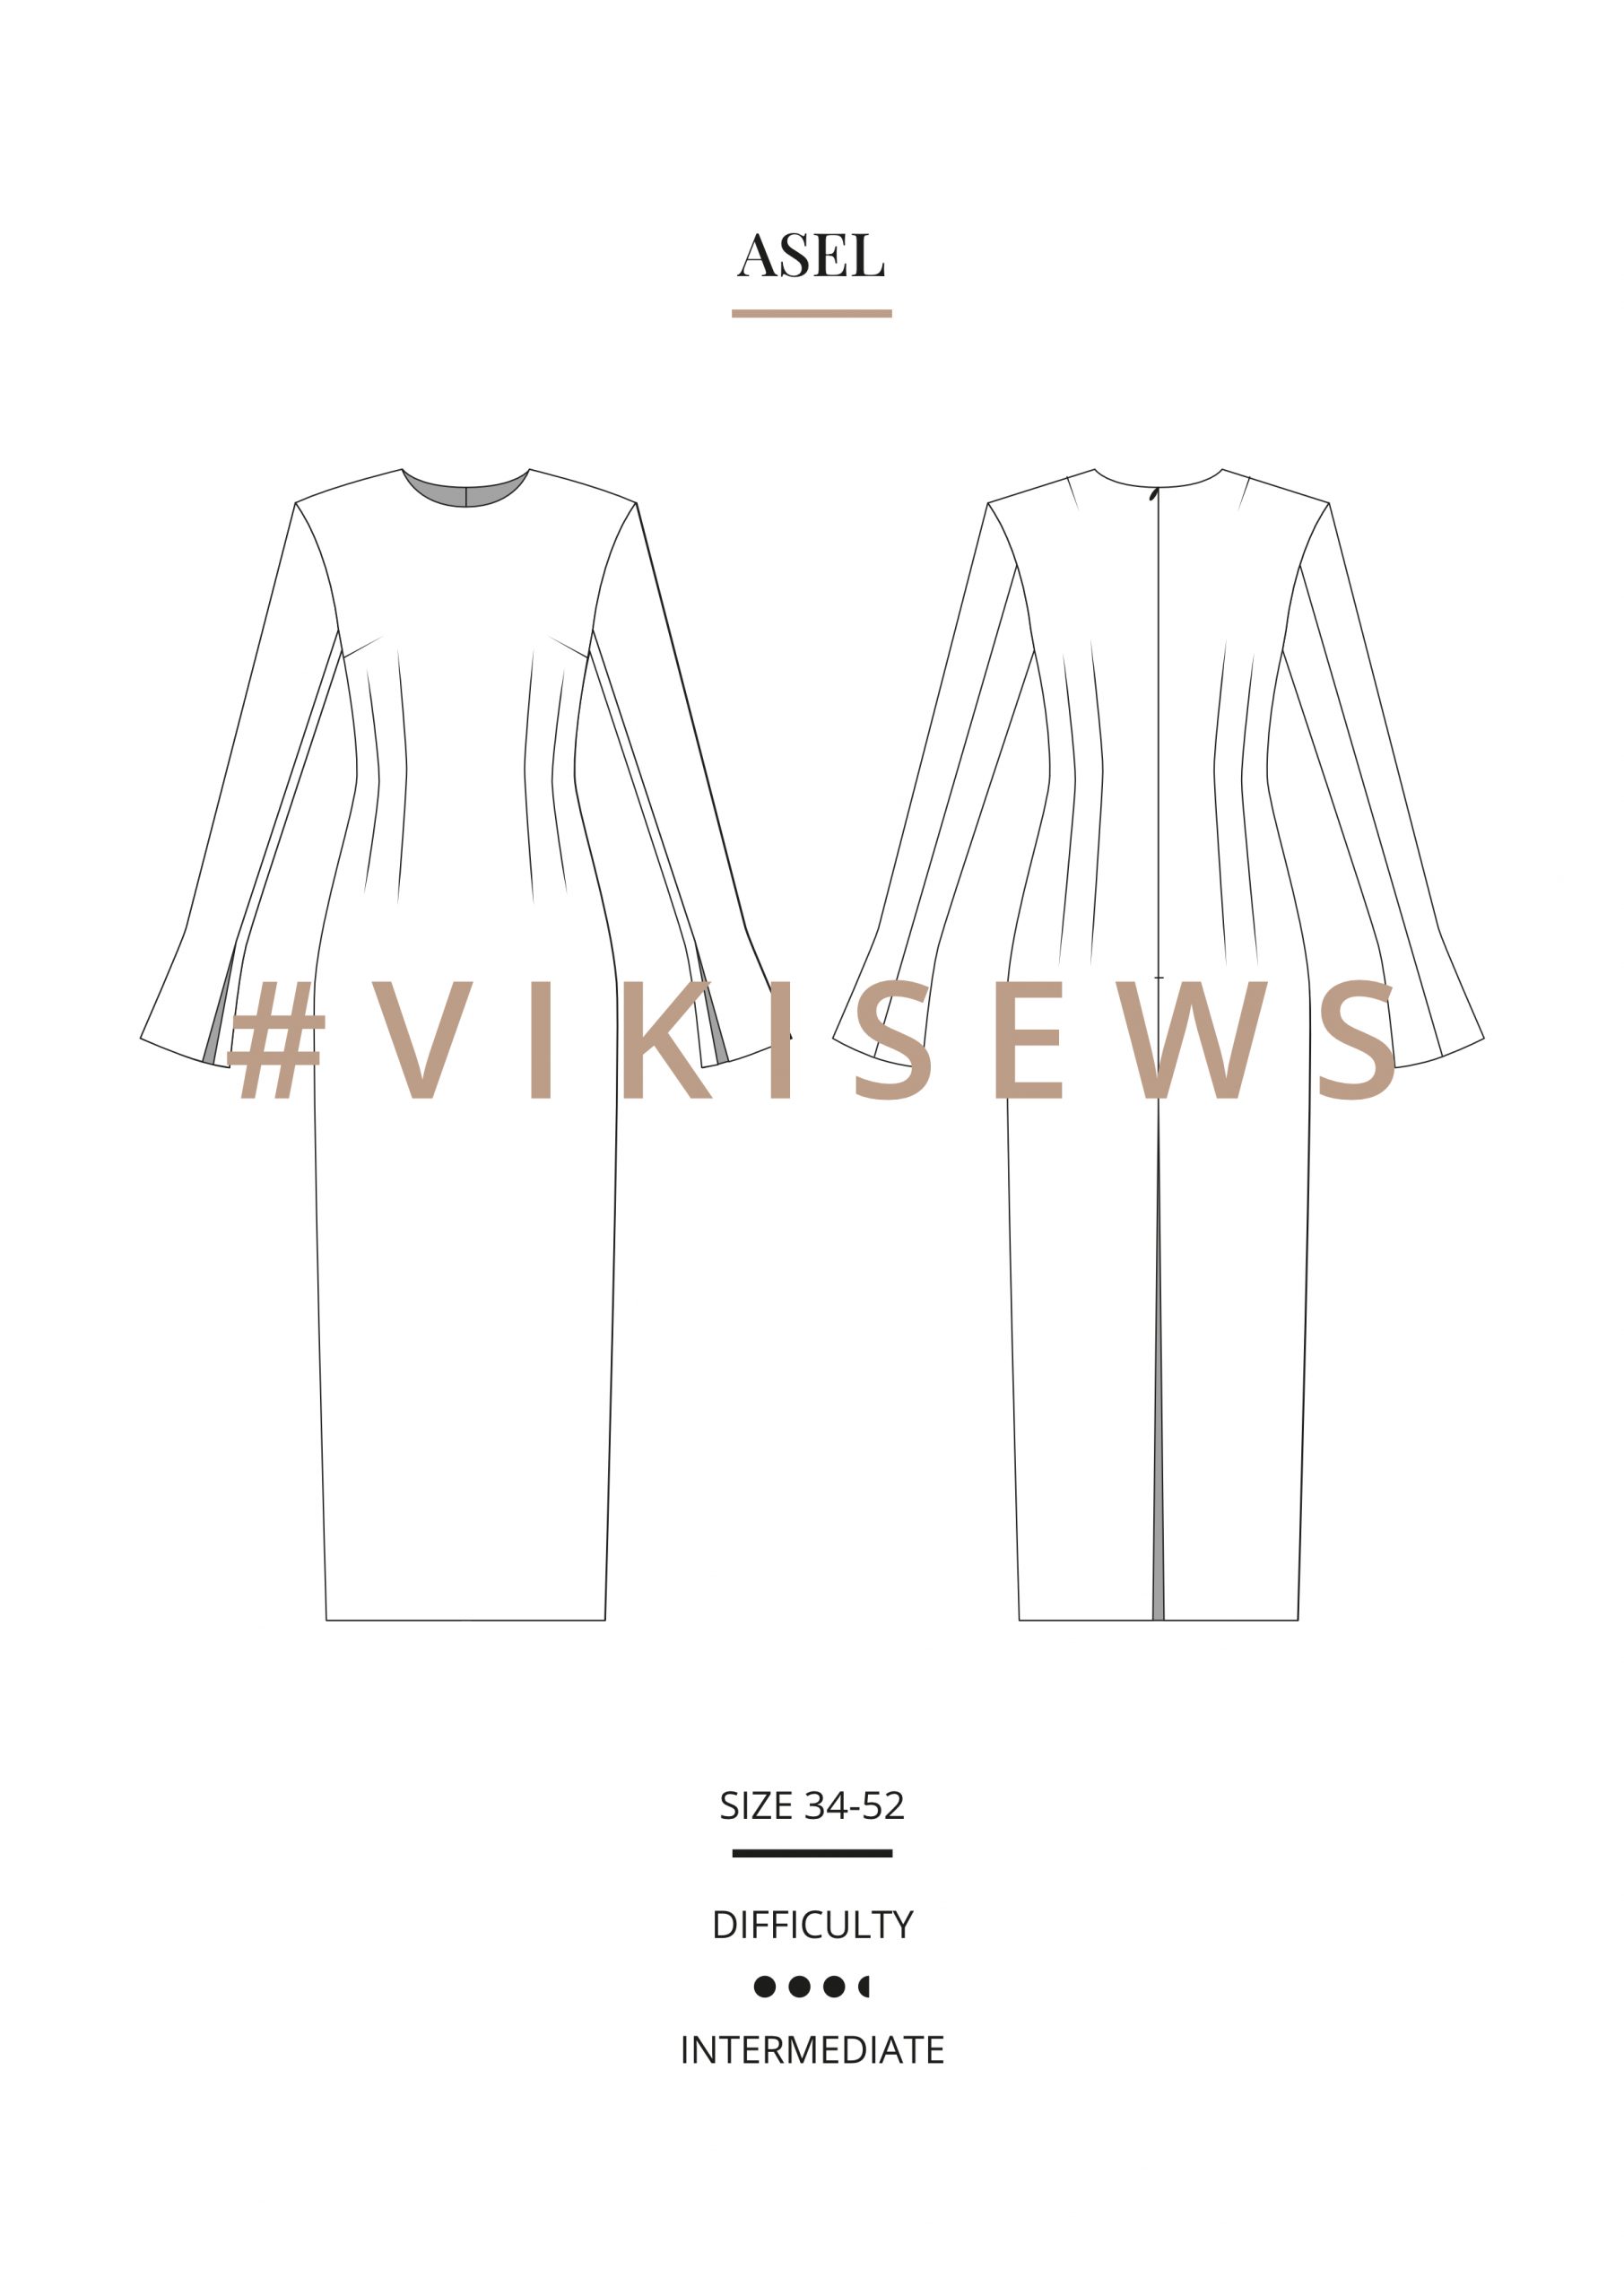 Vikisews Asel Dress PDF